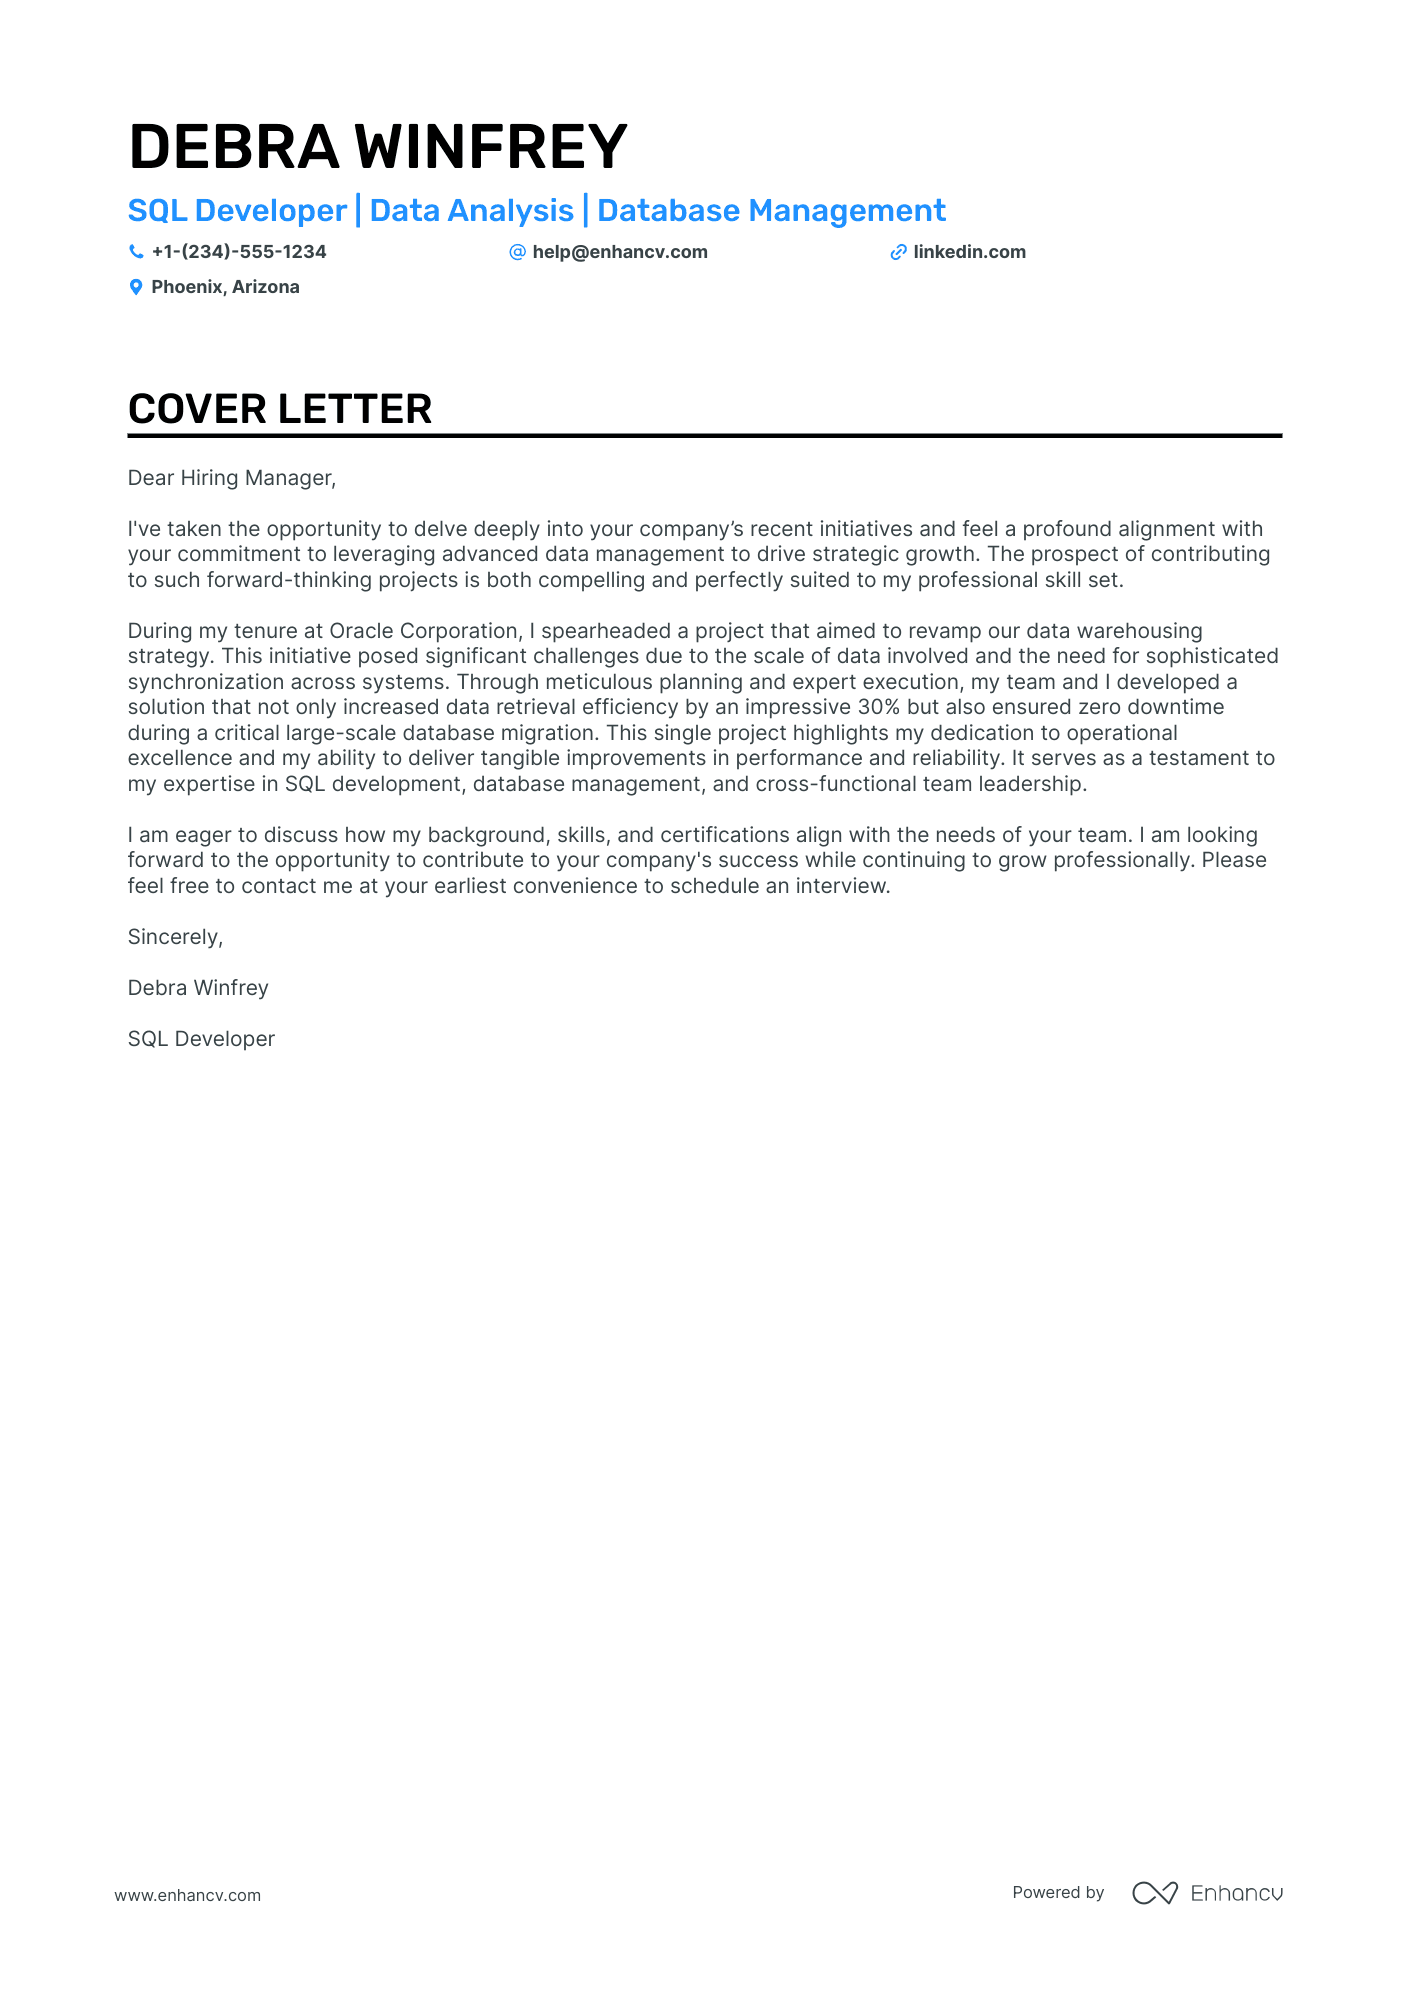 cover letter for job application for web developer